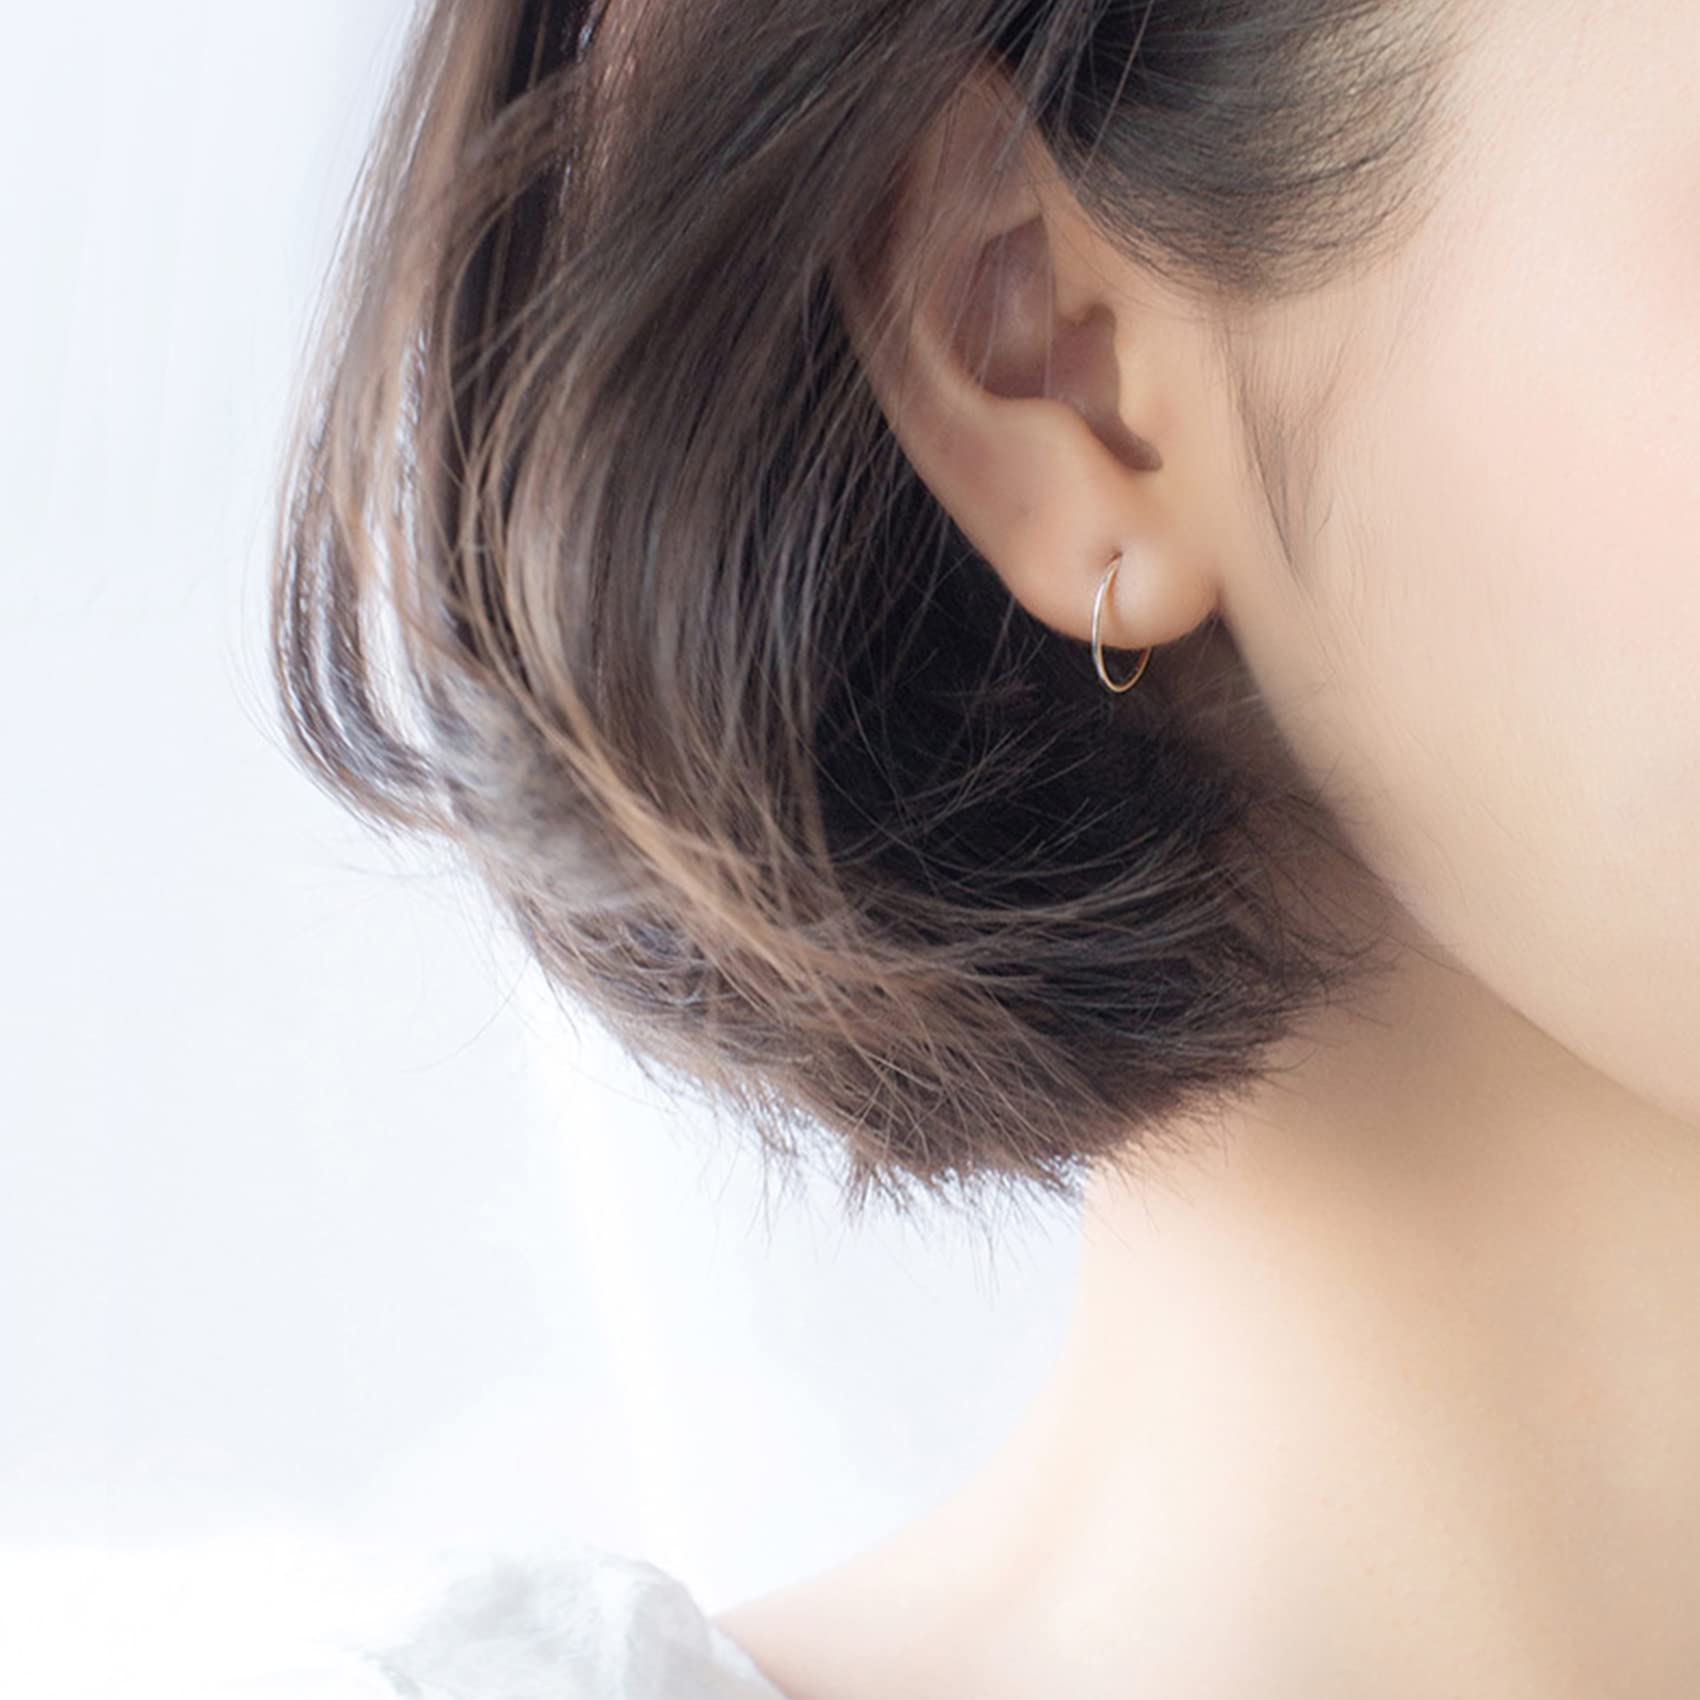 Silver Hoop Earrings- Cartilage Endless Small Hoop Earrings Set for Women Men Girls, 3 Pairs of Hypoallergenic 925 Sterling Silver Tragus Earrings Nose Lip Rings